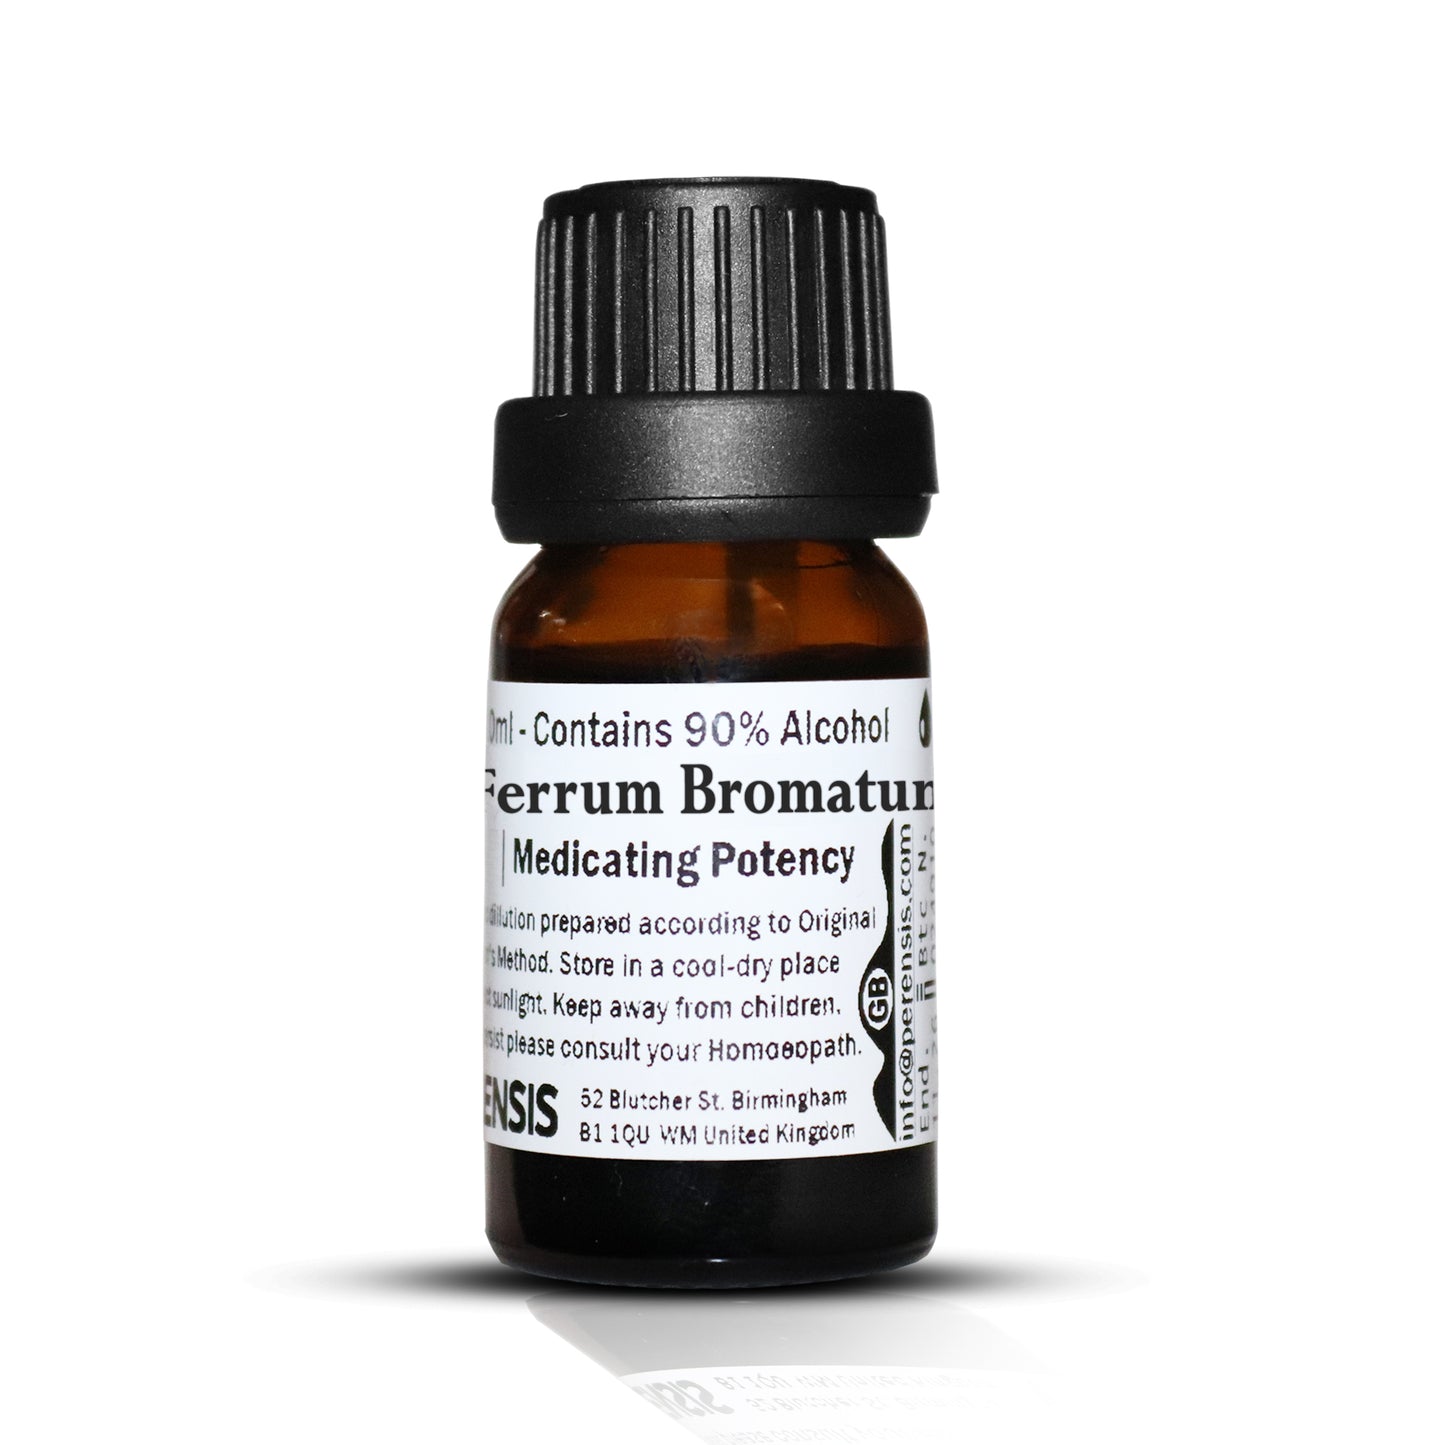 Ferrum Bromatum